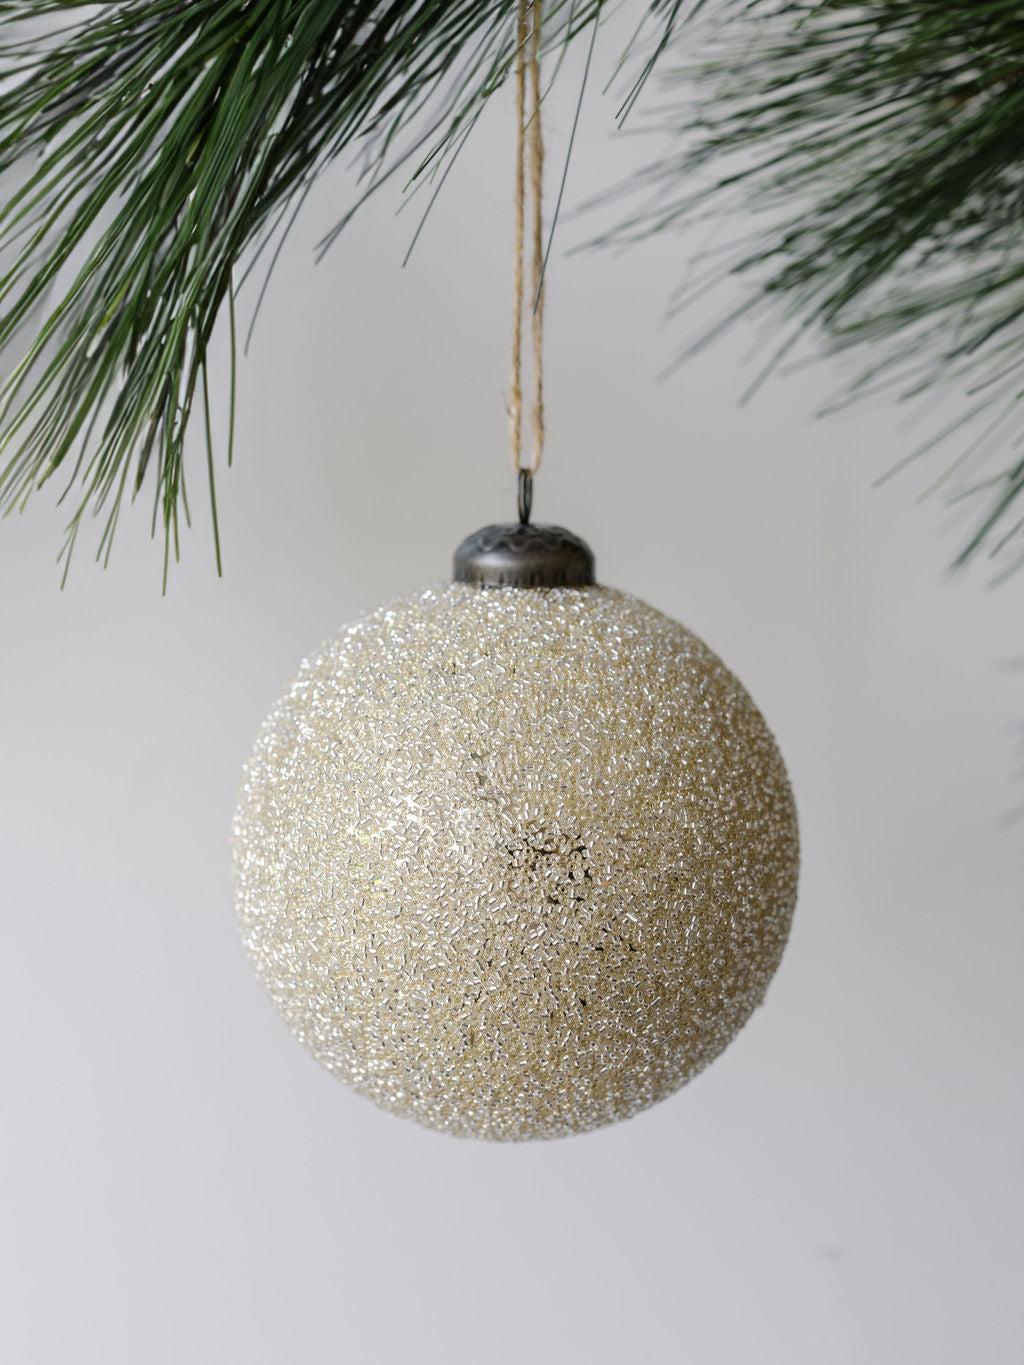 4" Beaded Cream Glass Ornament - Set of 4 closeup